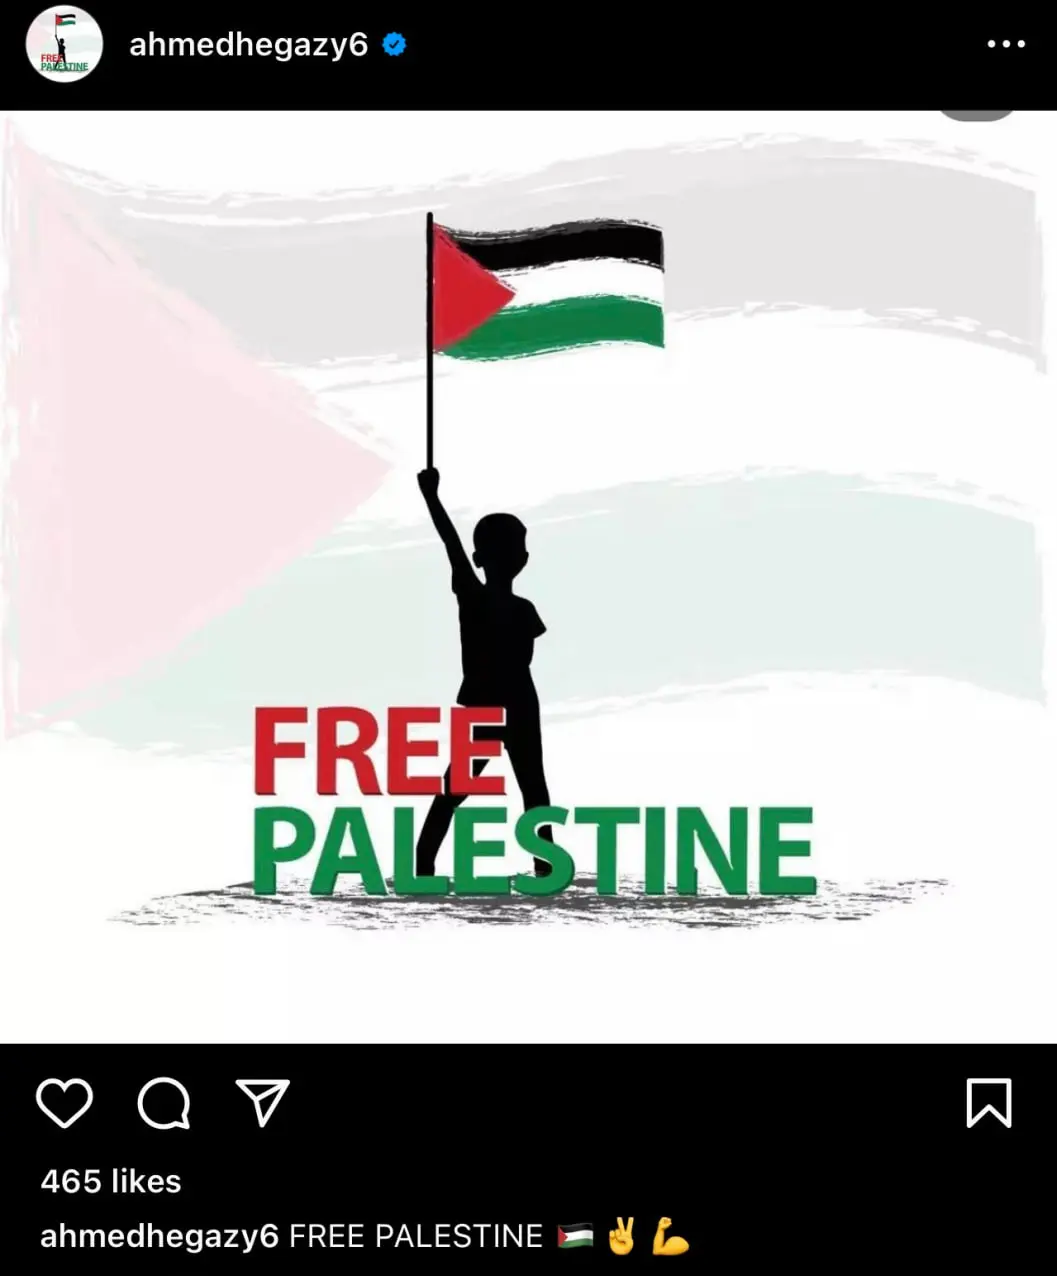  حمایت مدافع تیم ملی مصر از فلسطین +عکس 